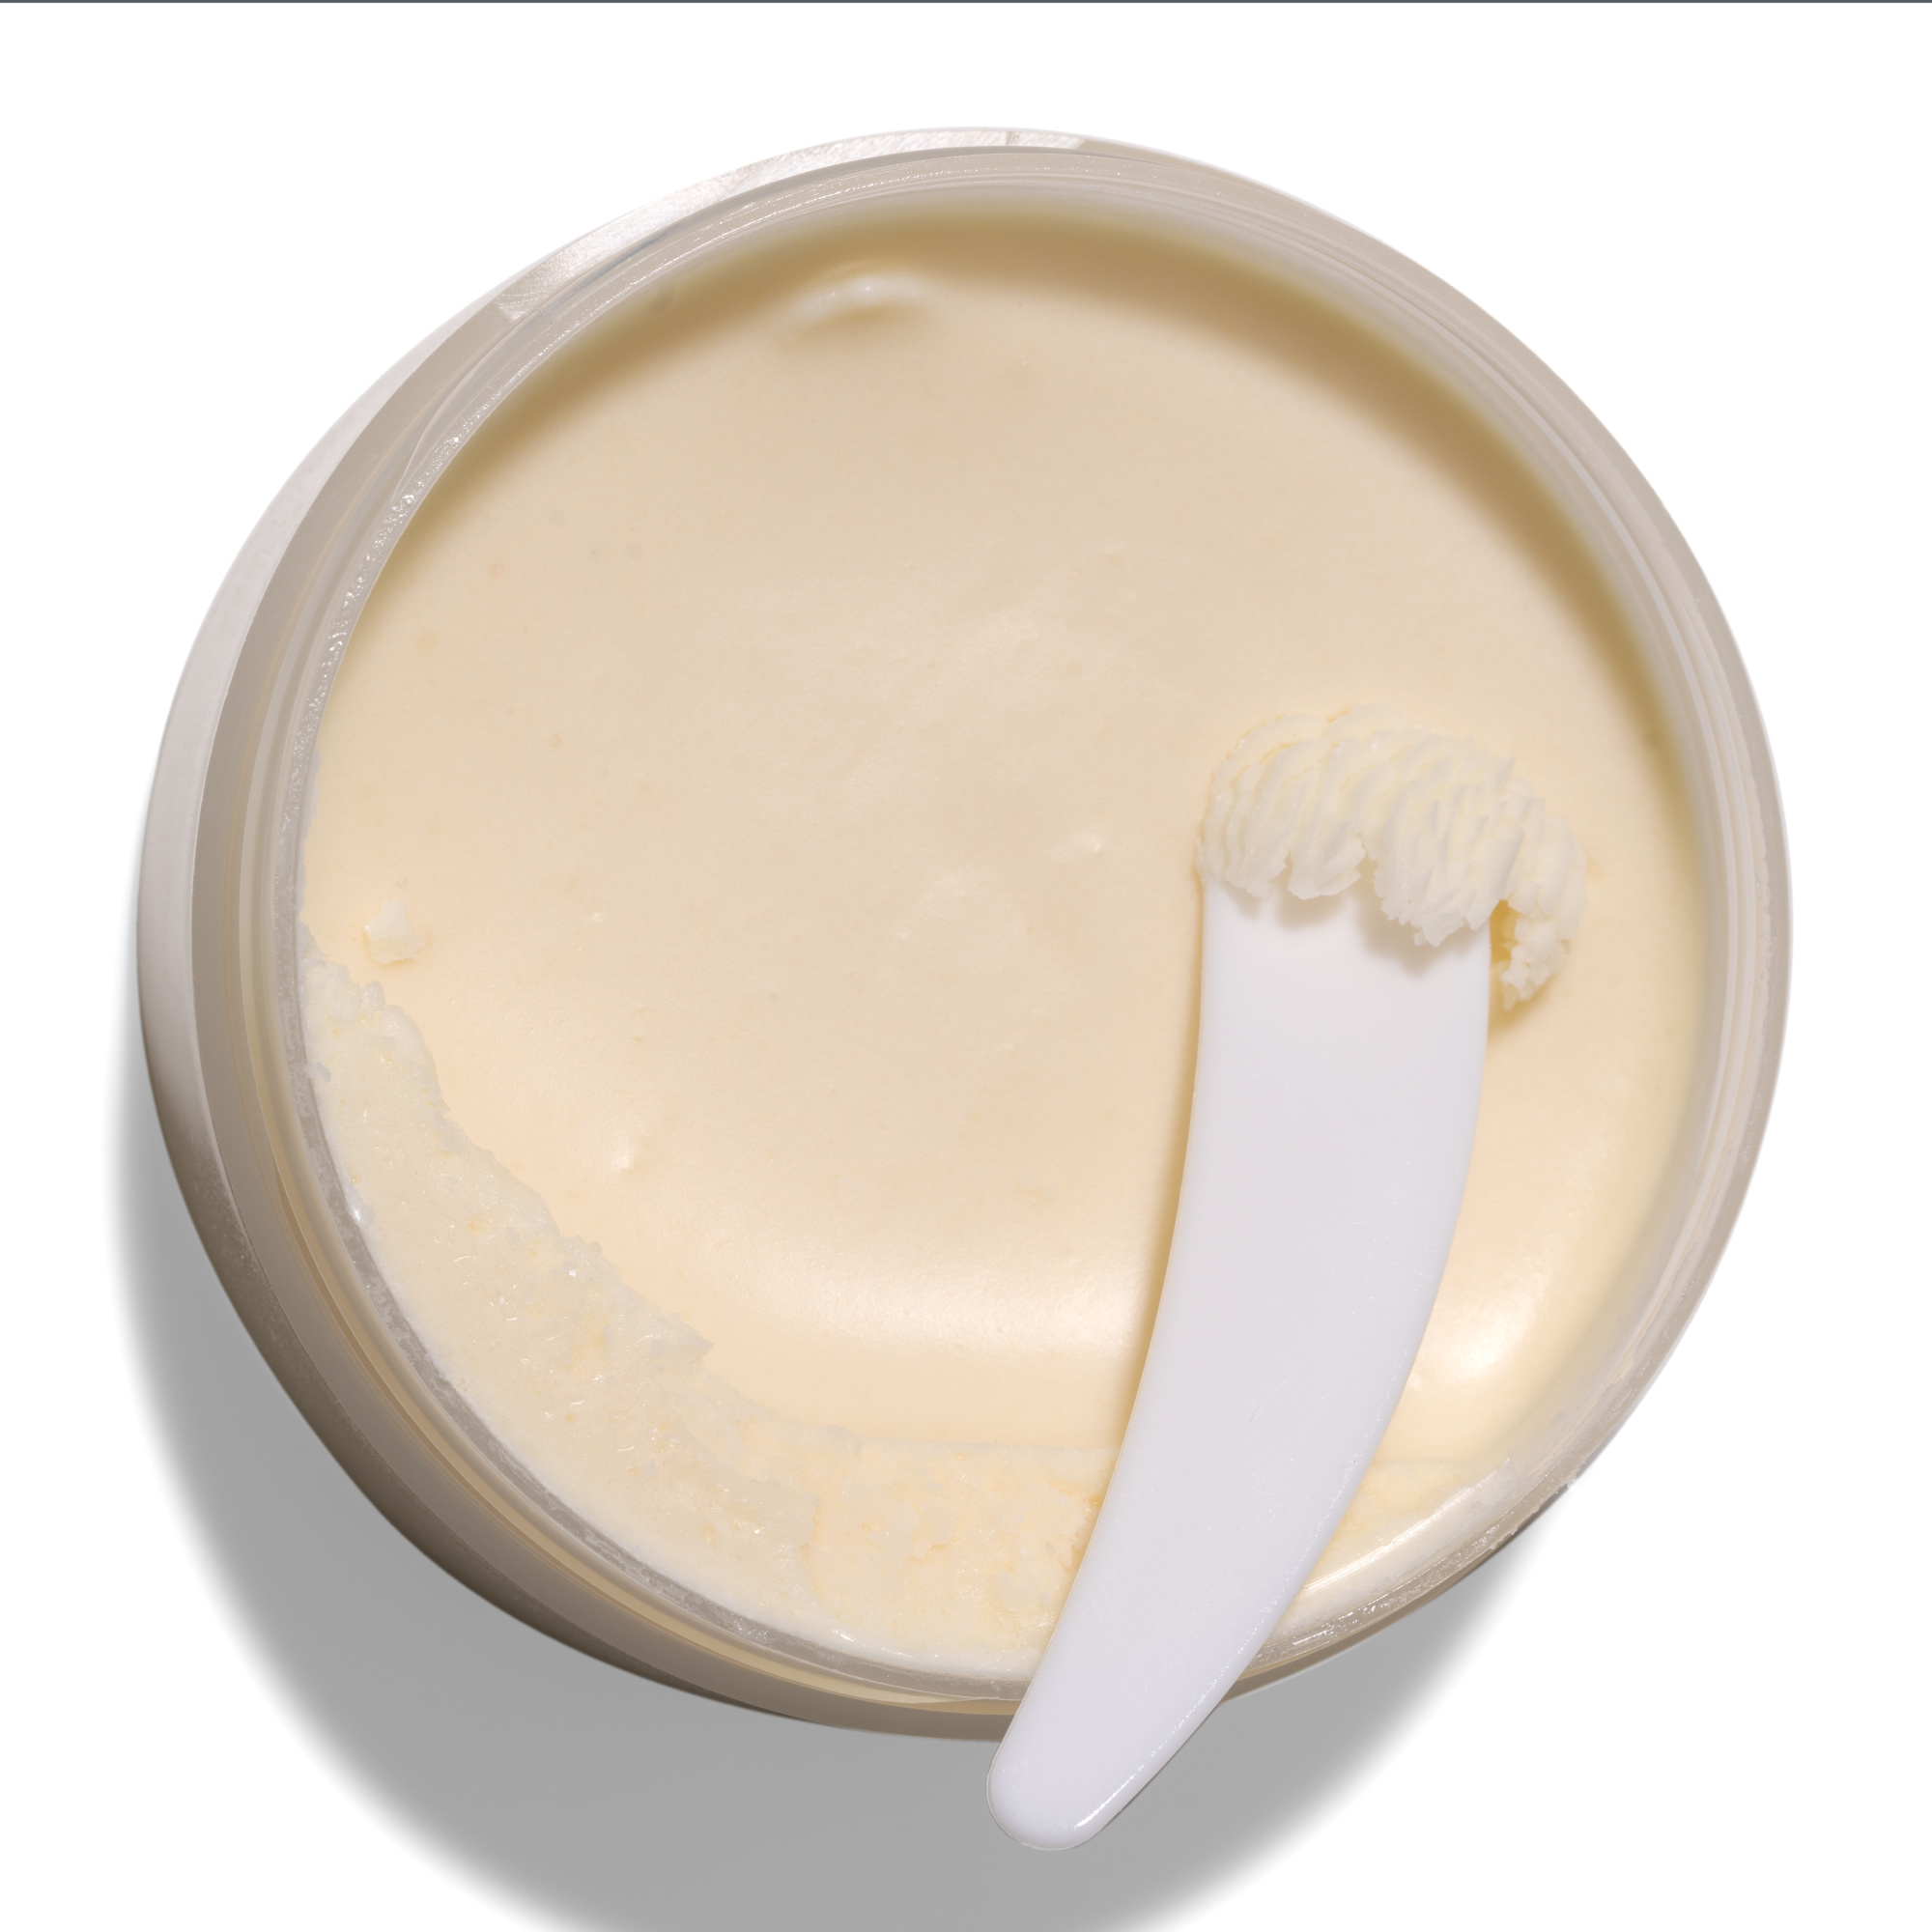 Масло для тела Velvet Butter Julirea 50г (маракуйя) купить в онлайн экомаркете